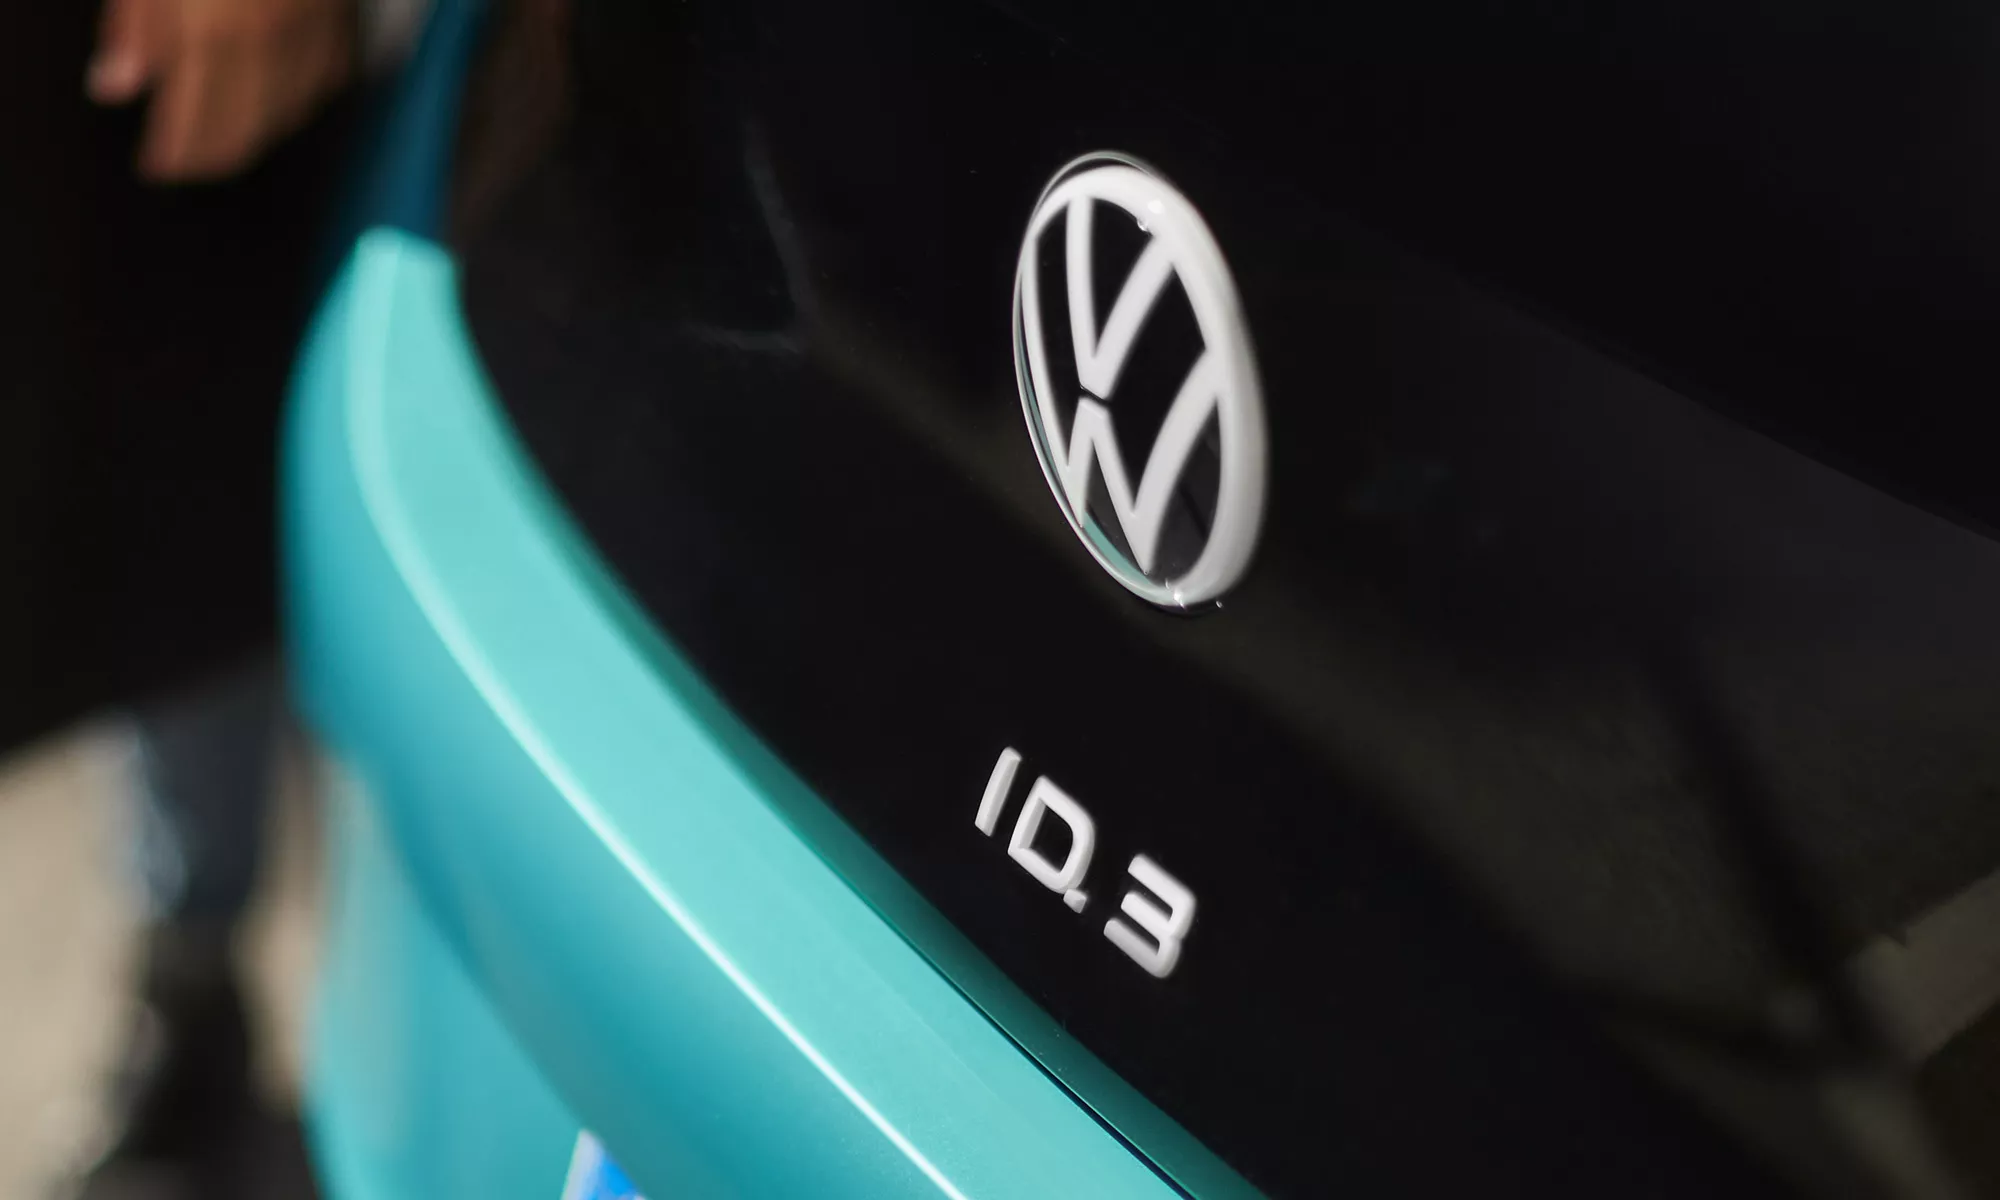 Muchos son los rumores sobre una posible desaparición de los nombres con el 'apellido' ID en Volkswagen.